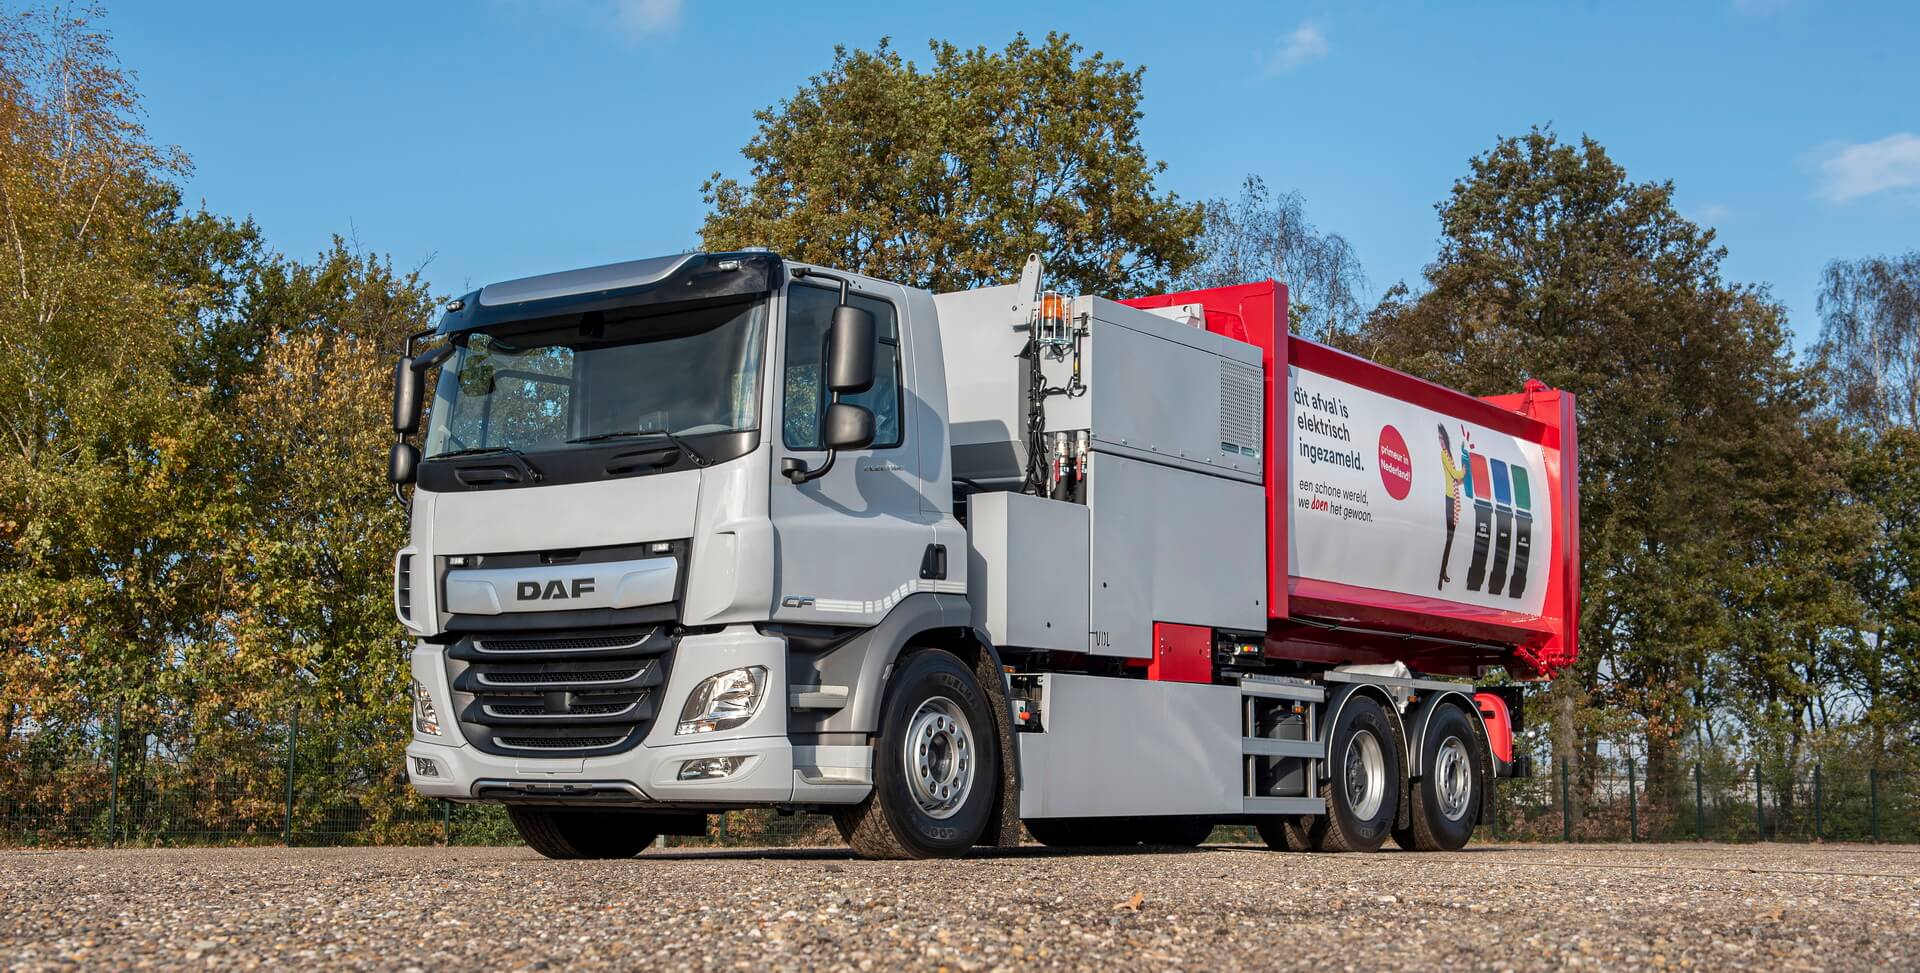 DAF представил свой электрический трехосный грузовик CF Electric с жестким шасси 6×2 массой 28 тонн